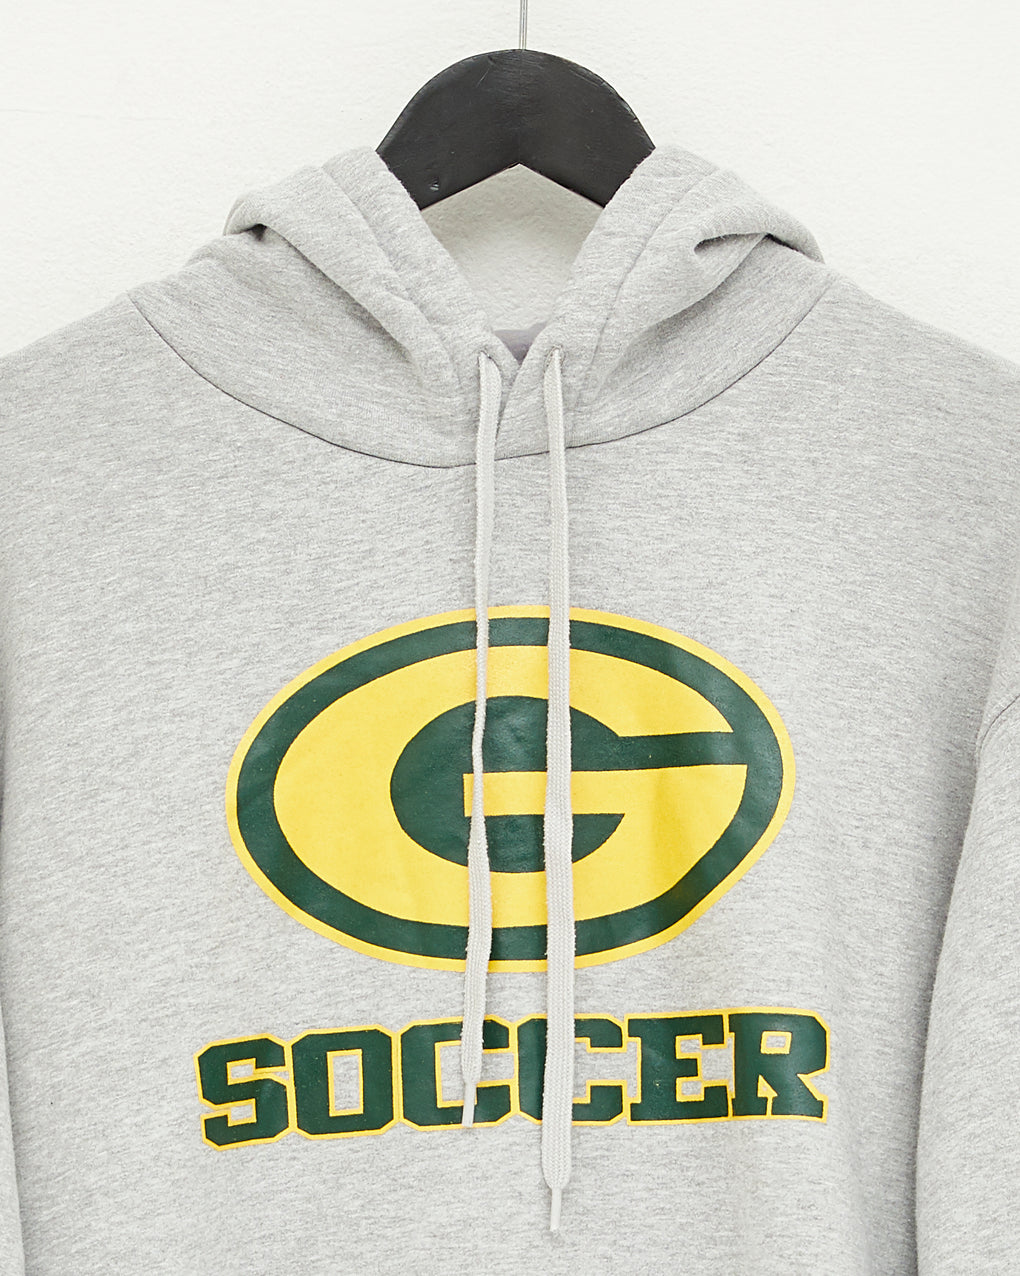 Vintage Adidas G Soccer Hoodie (L)